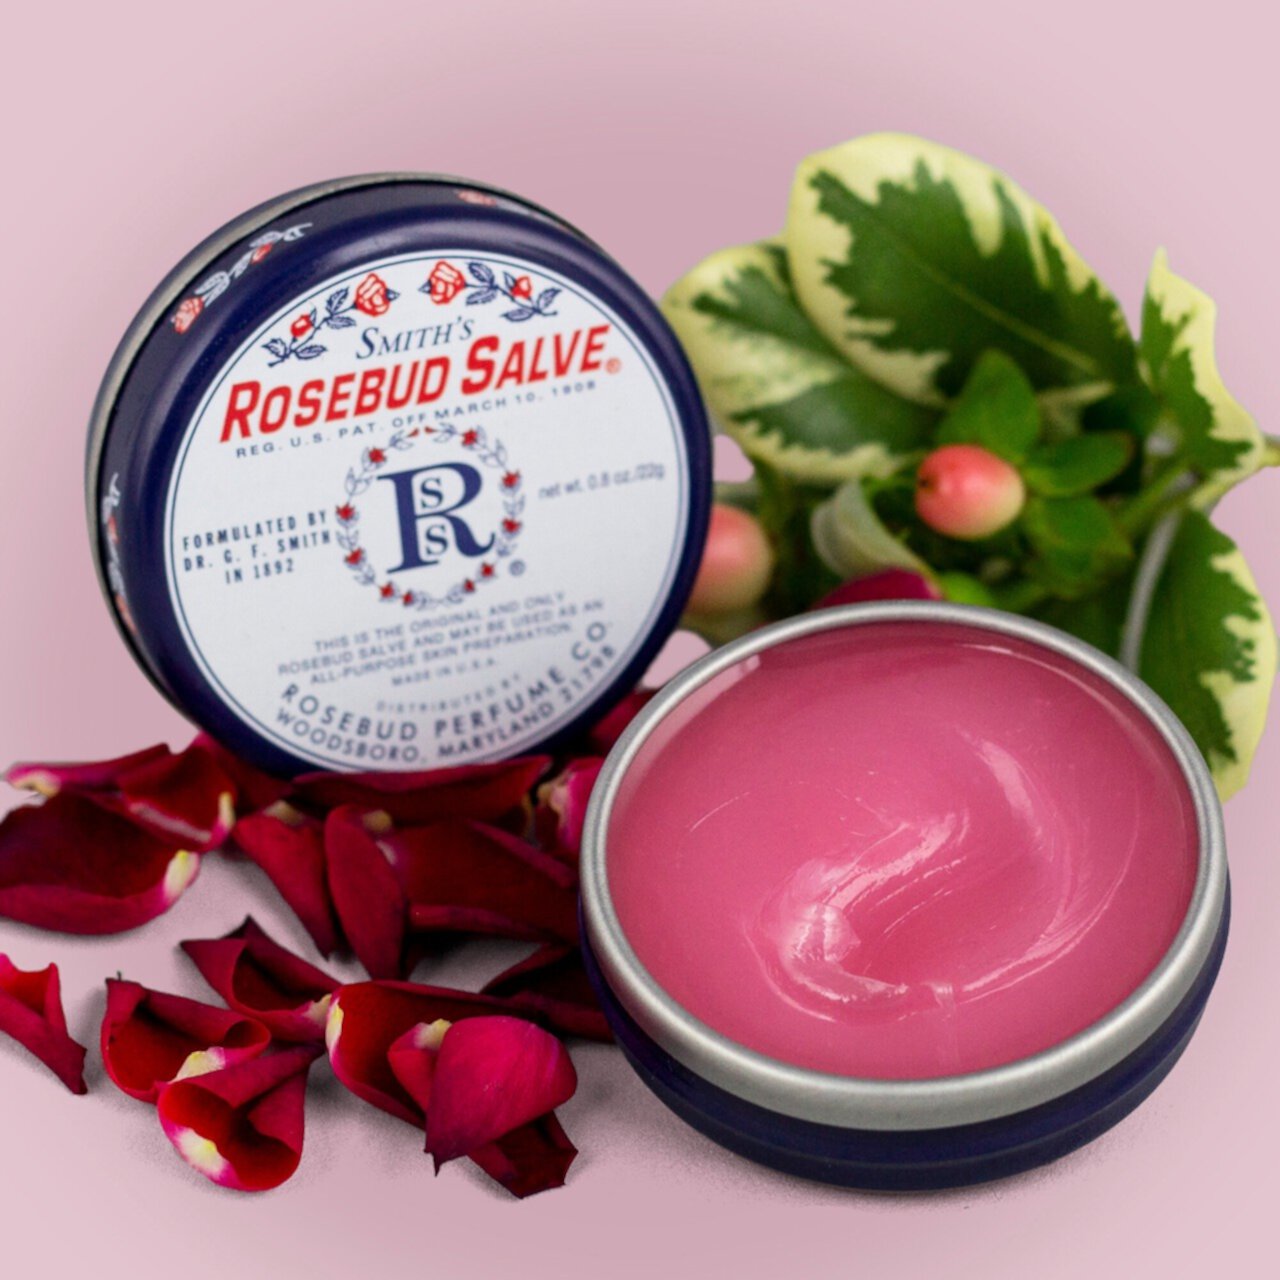 Rosebud Salve Rosebud Perfume Co.